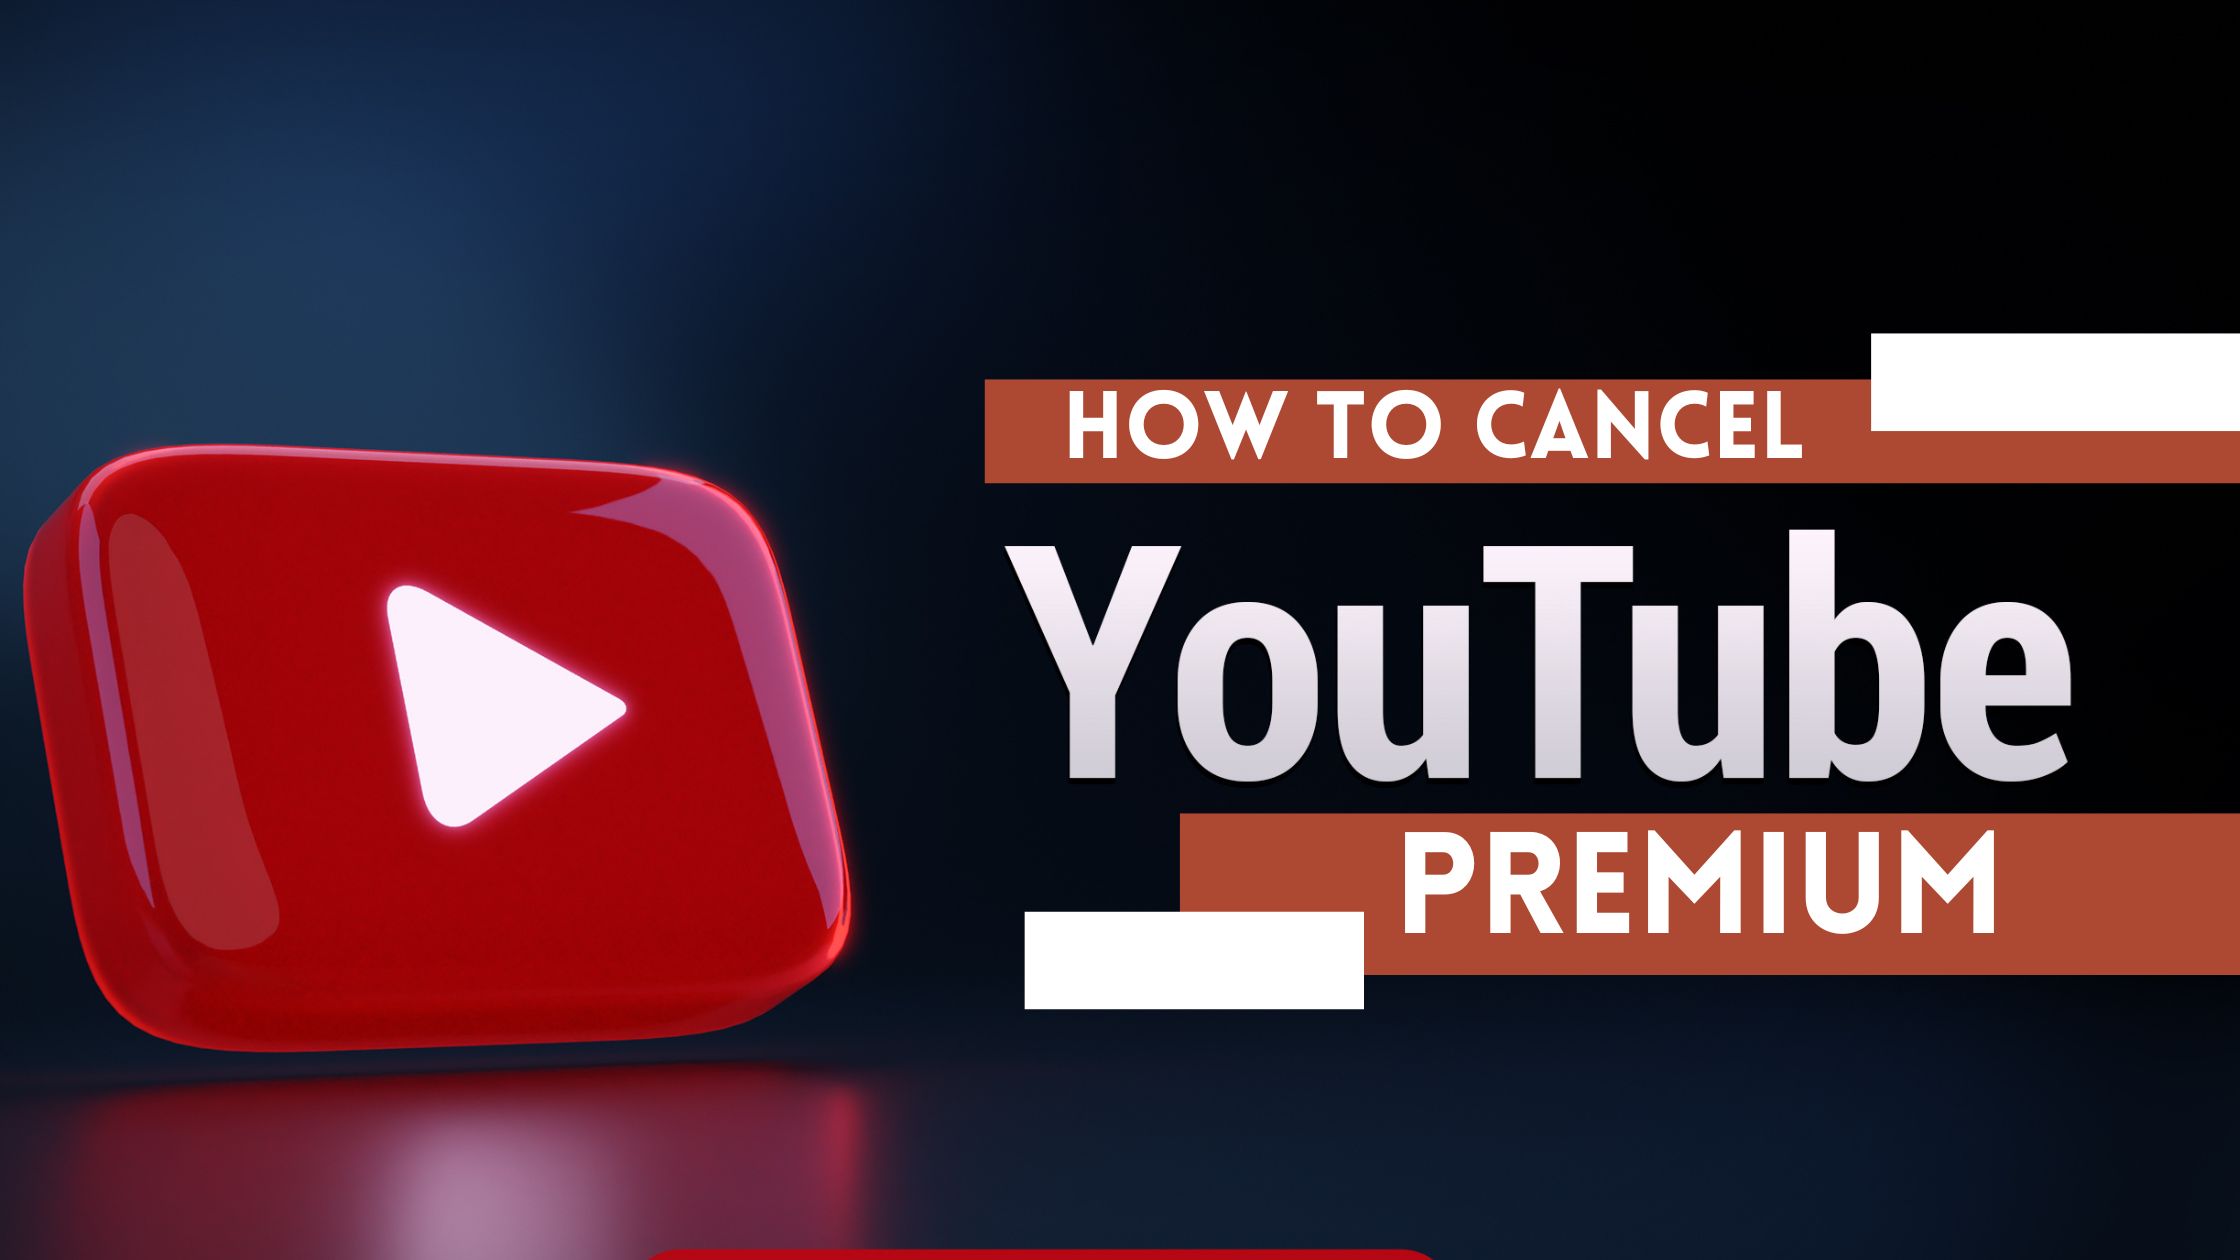 How to cancel YouTube Premium